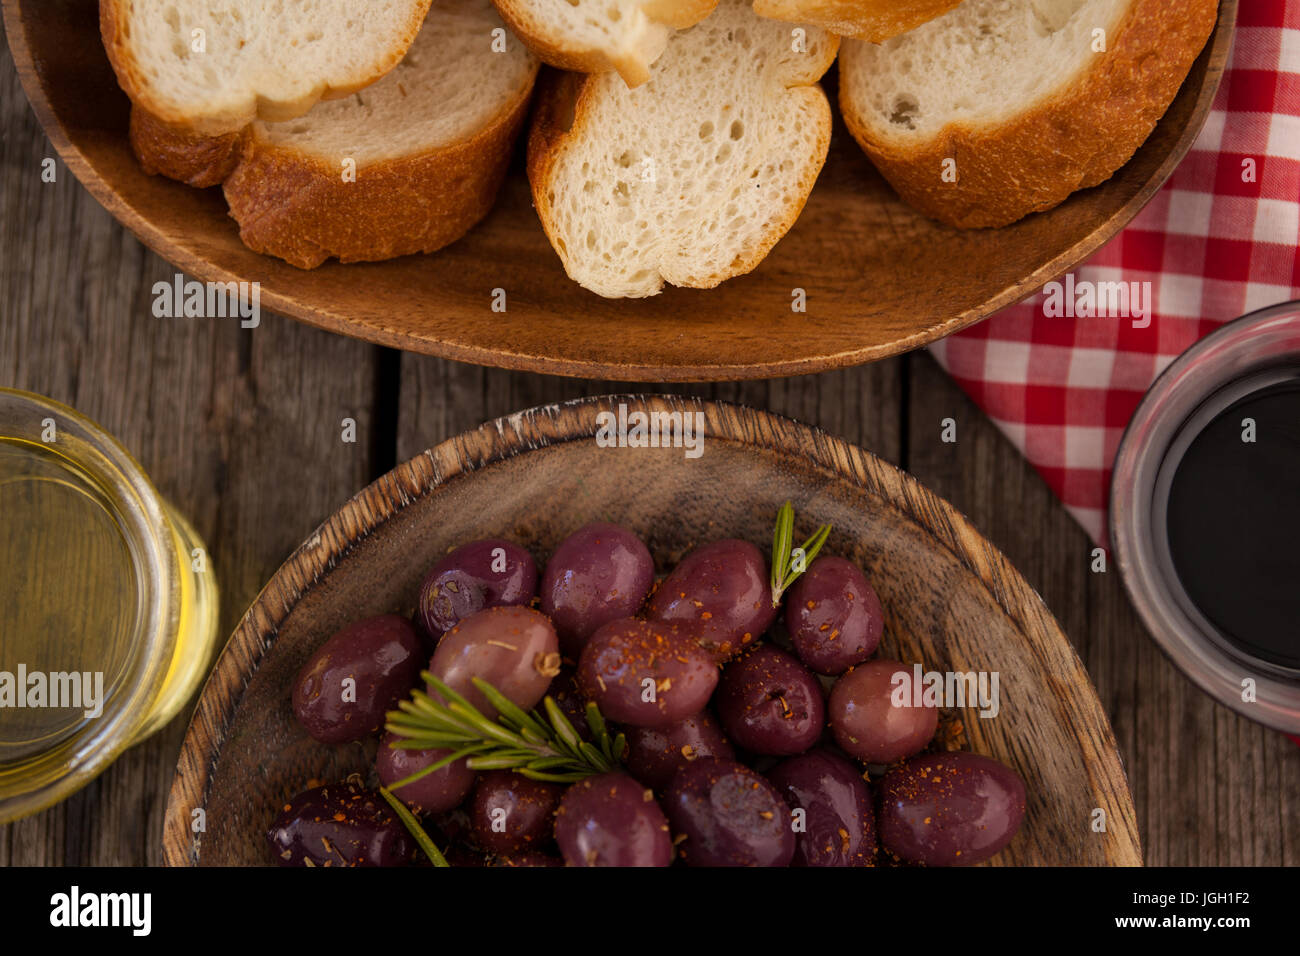 Vista aerea di olive e pane con olio nel contenitore sul tavolo Foto Stock